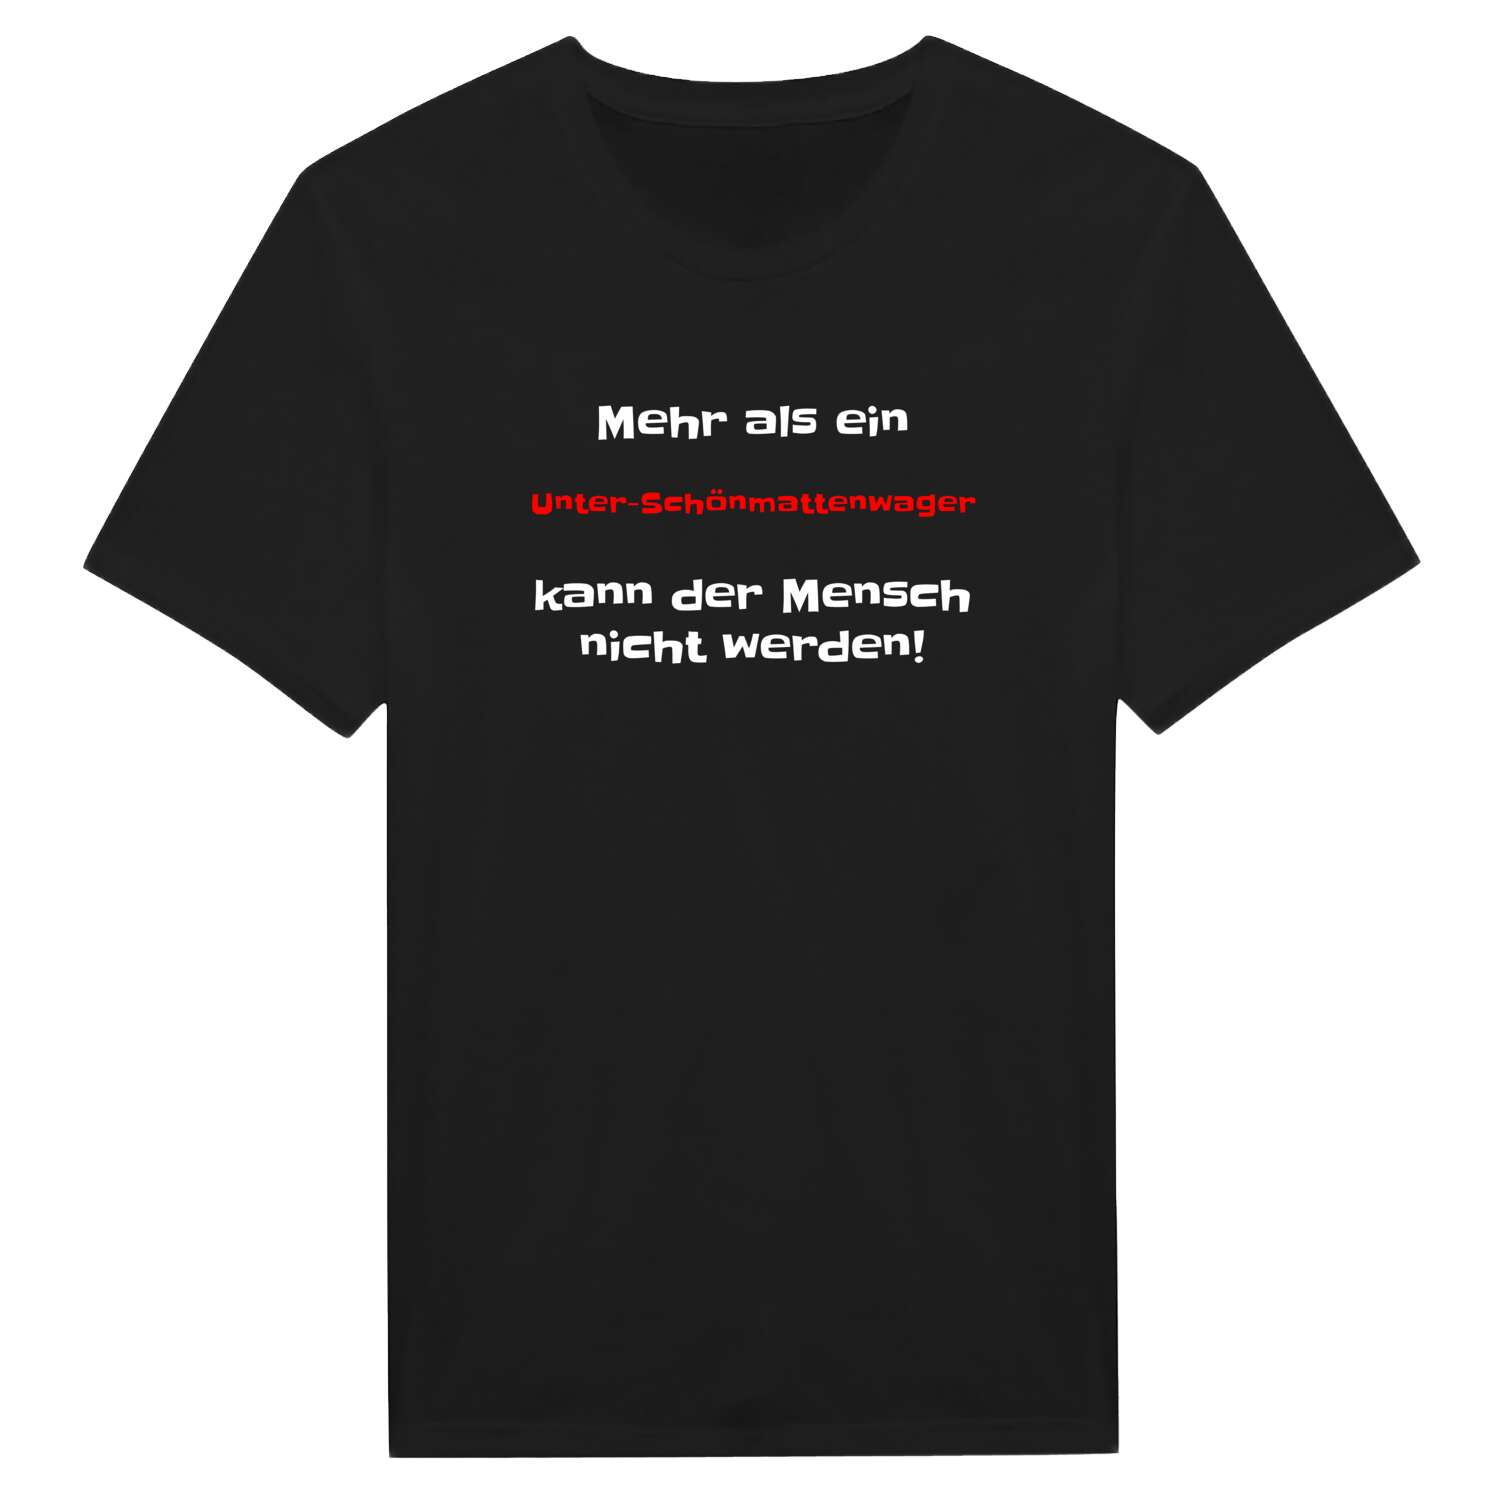 Unter-Schönmattenwag T-Shirt »Mehr als ein«